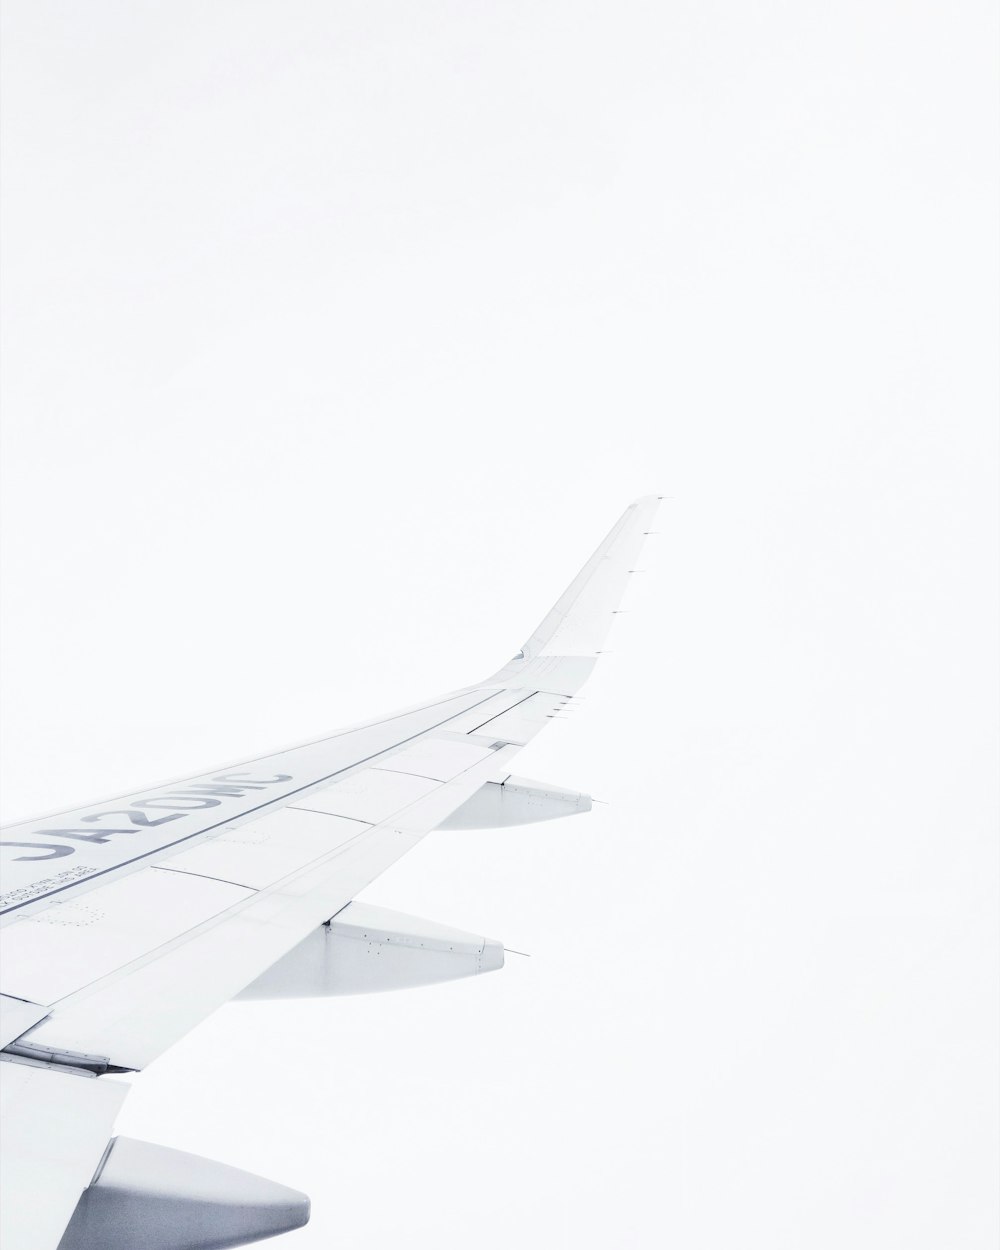 white airplane on air